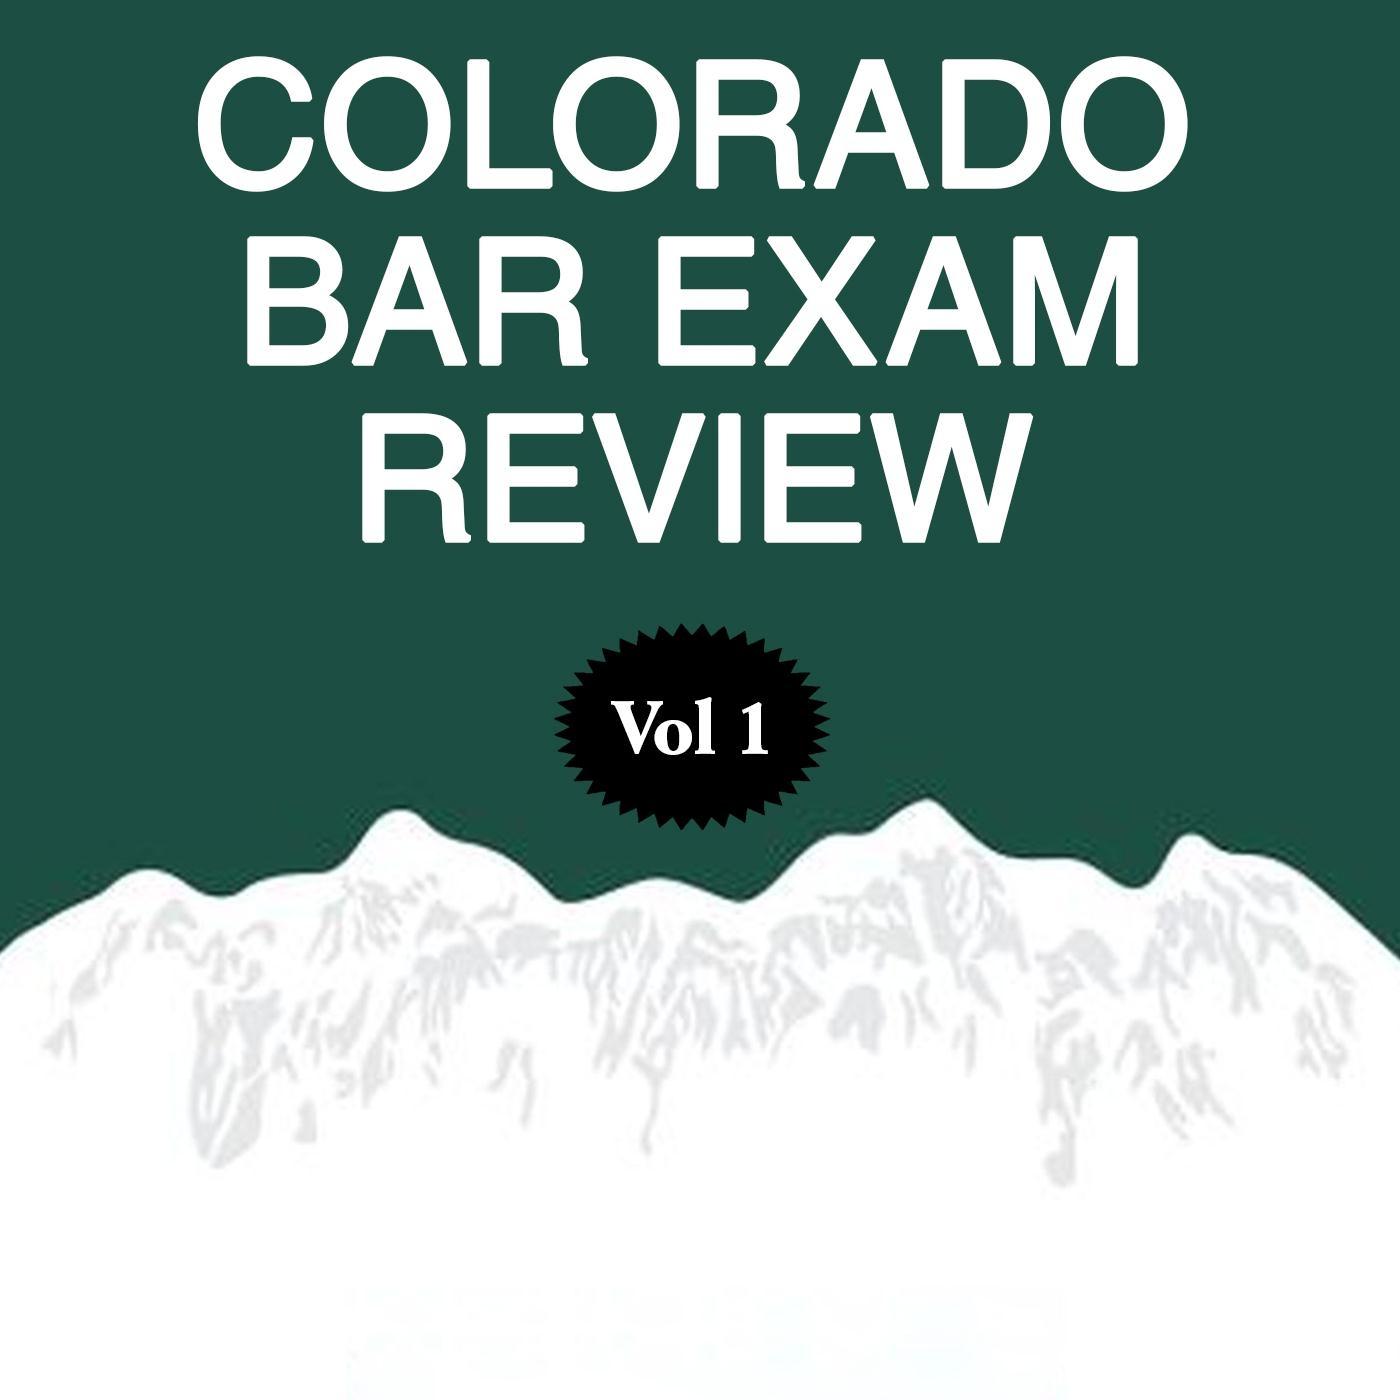 Rob Smith - Colorado Bar Exam Review, Pt. 7: Answer Explanations